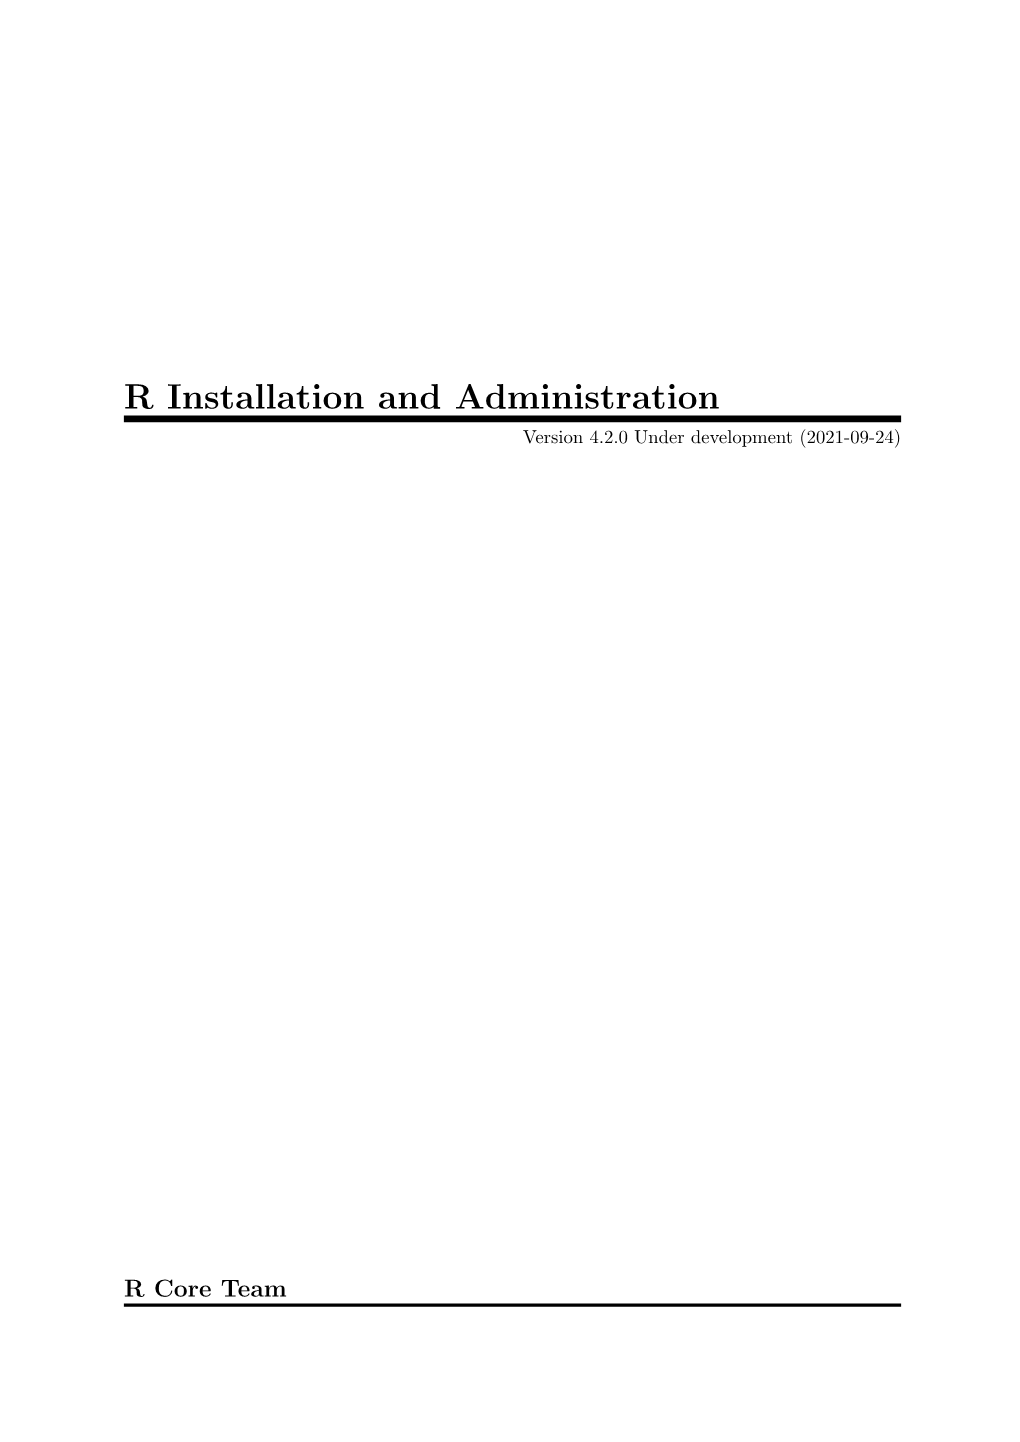 R Installation and Administration Version 4.2.0 Under Development (2021-09-24)